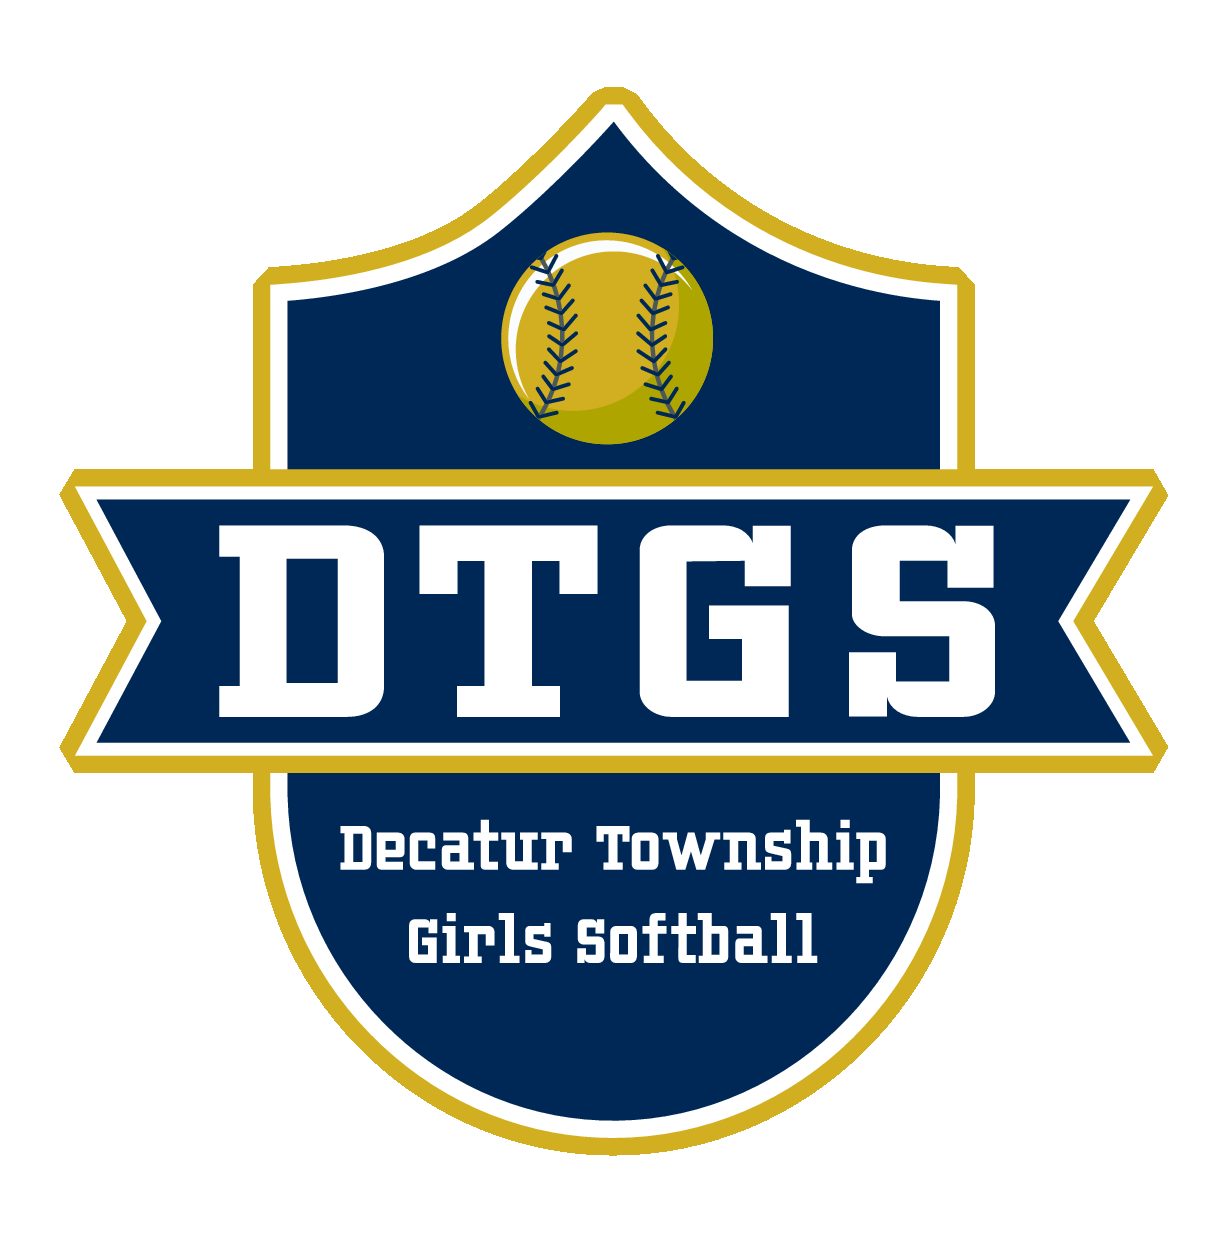 Decatur Township Girls Softball